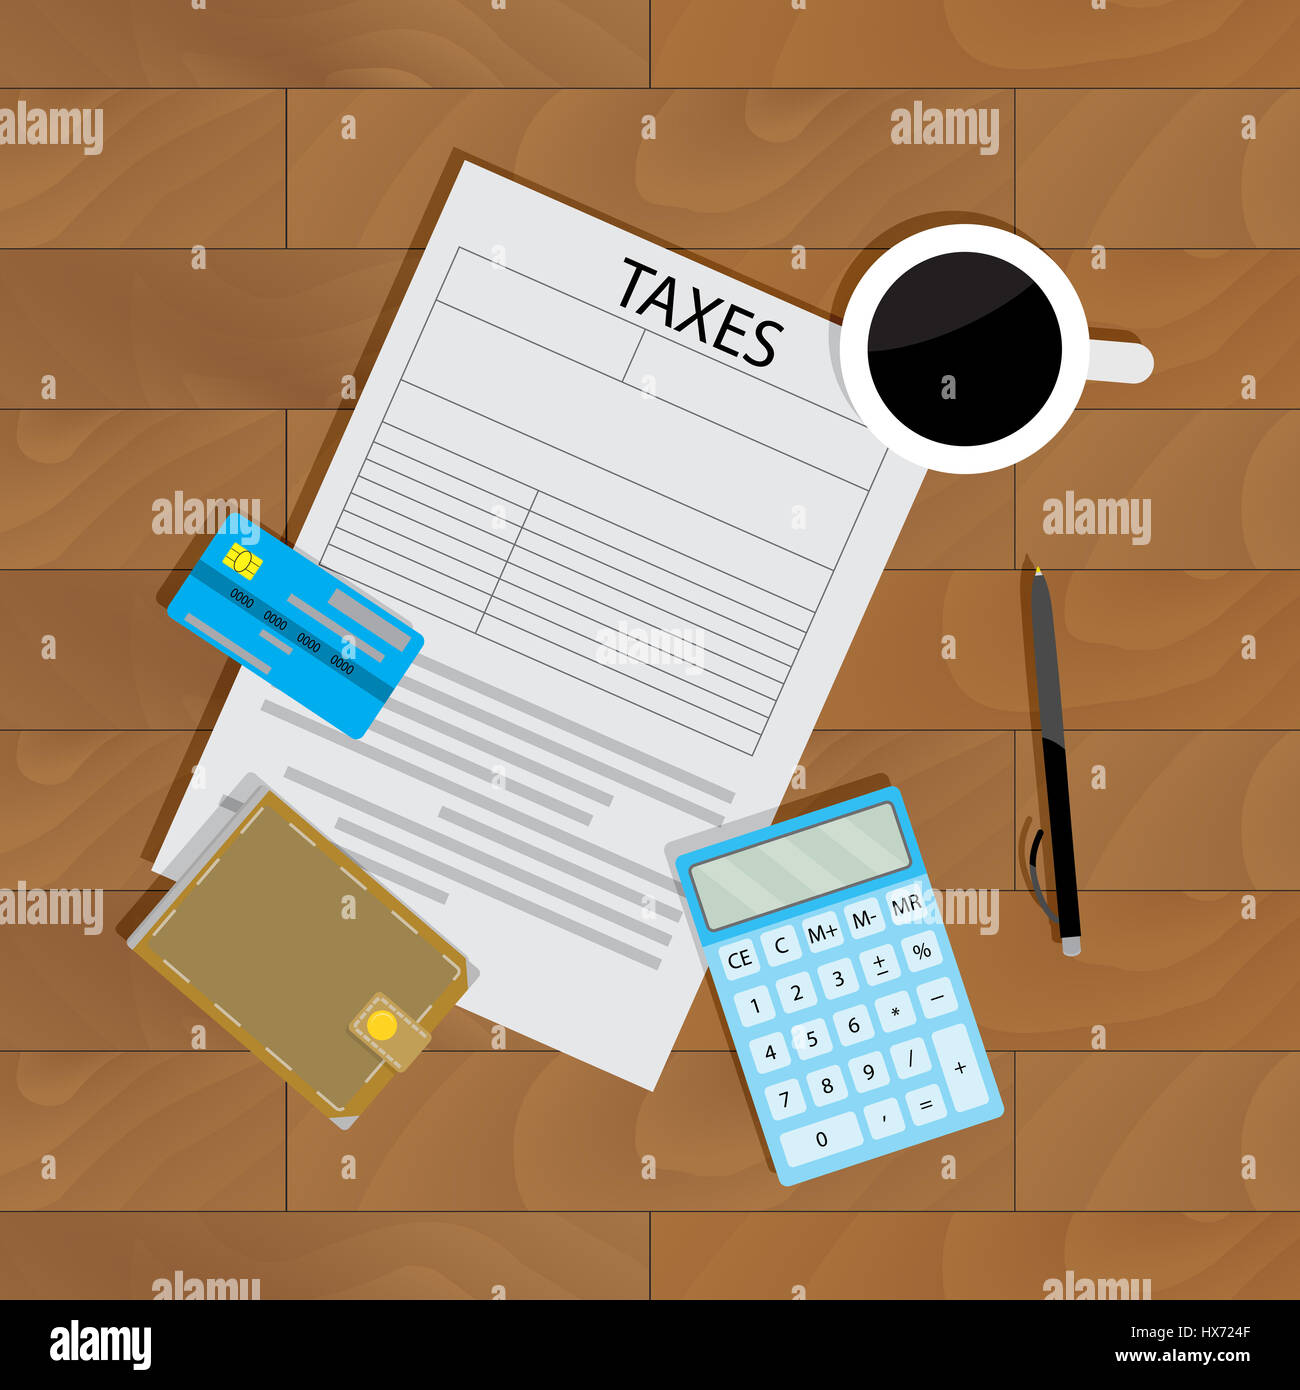 Jährliche Zahlung von Steuern. Bank-Gewinn und Budget, Brieftasche und Audit Dokument, Vektor-illustration Stockfoto